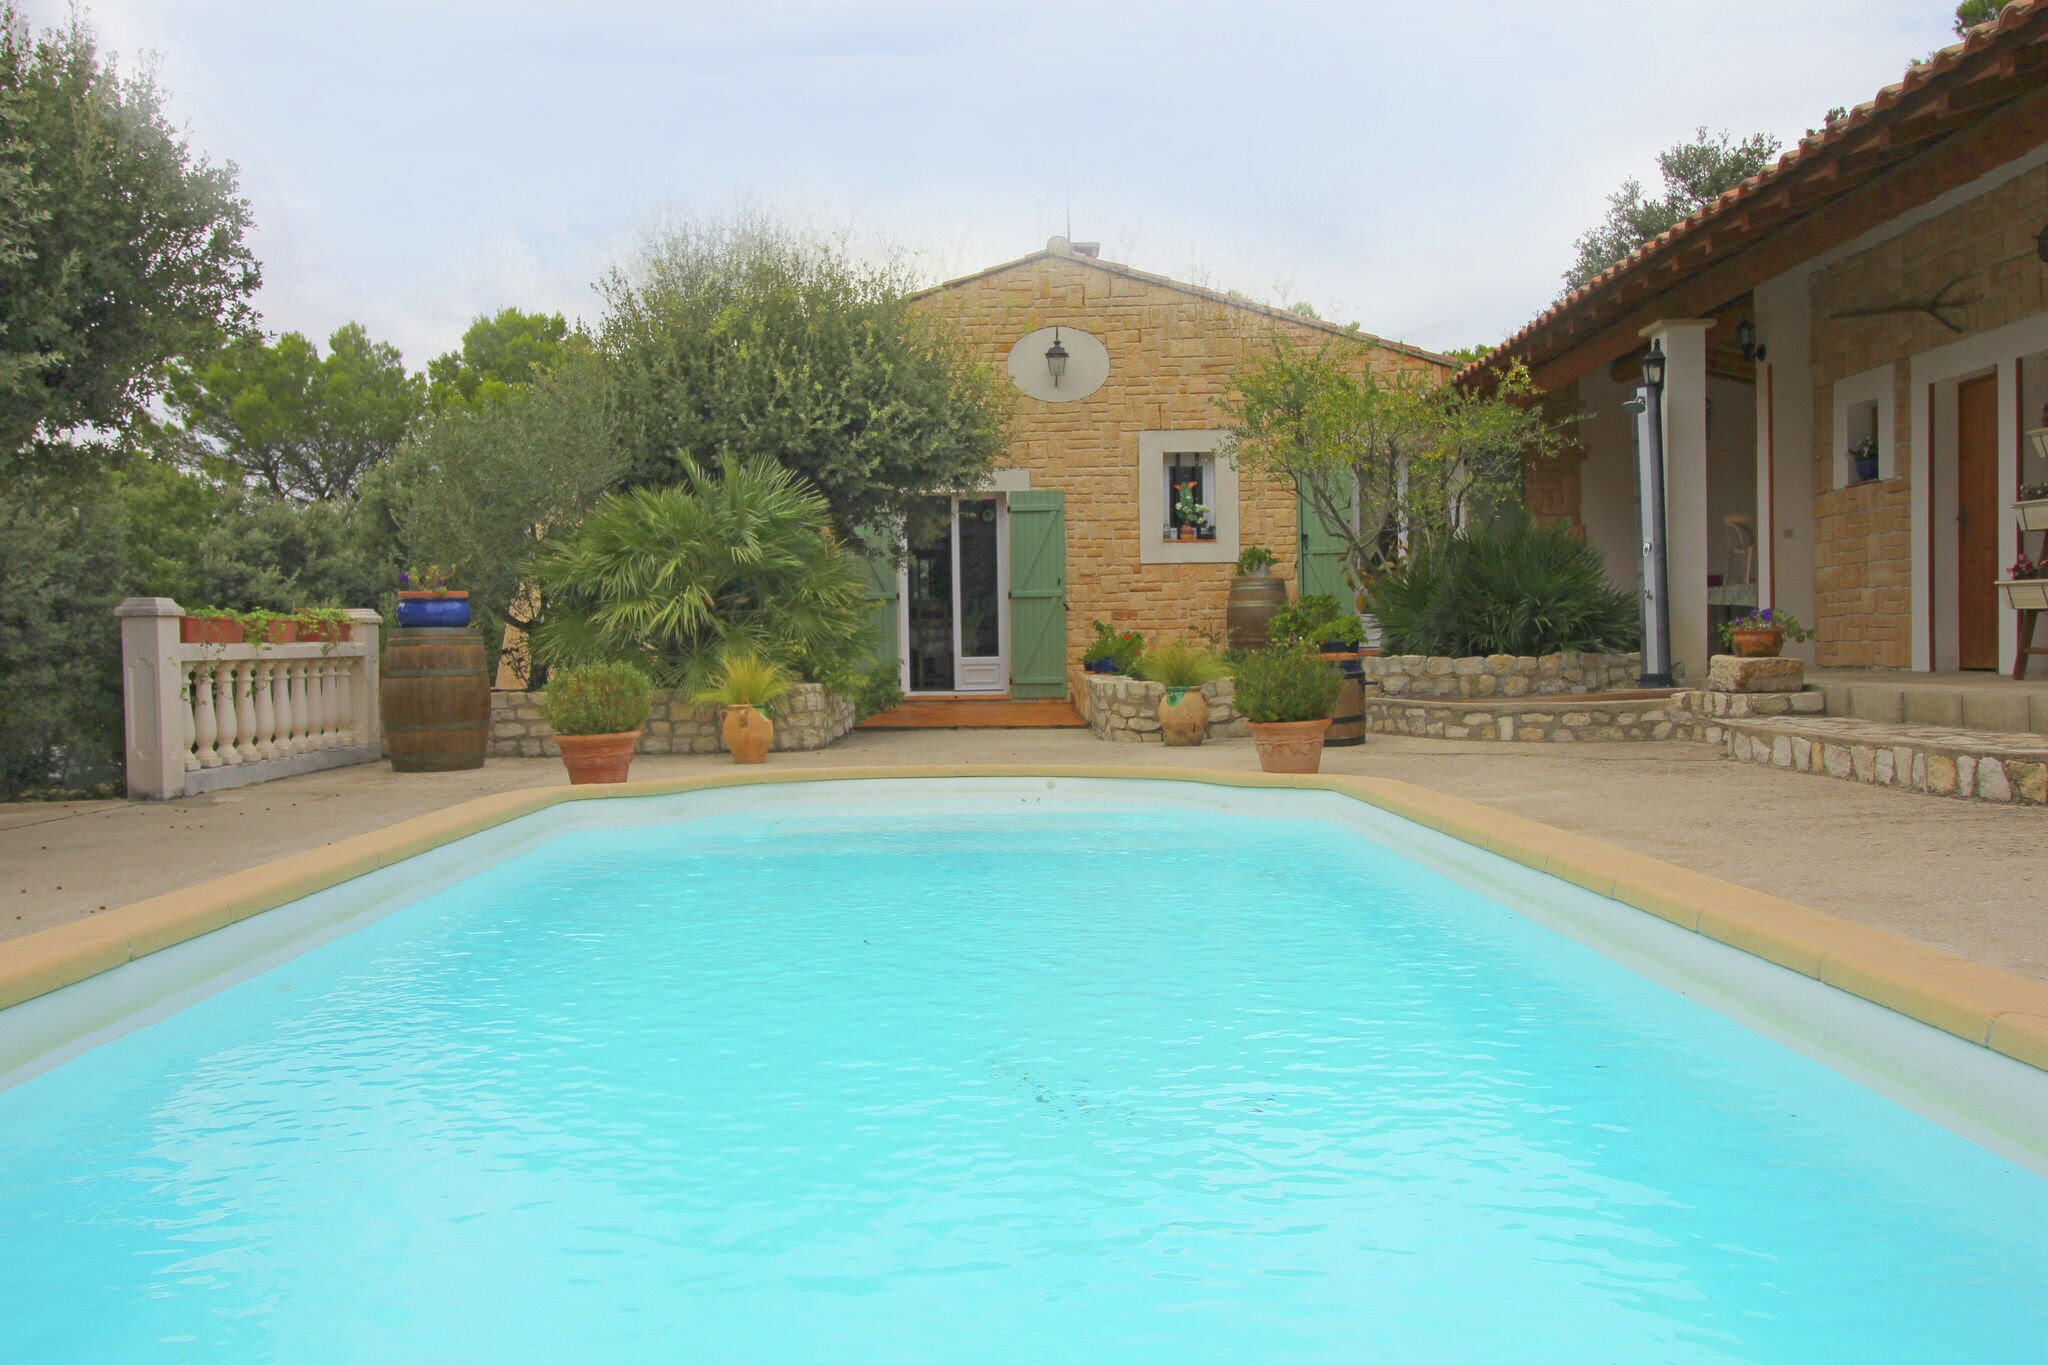 Jolie maison de vacances à Uchaux France avec piscine privée